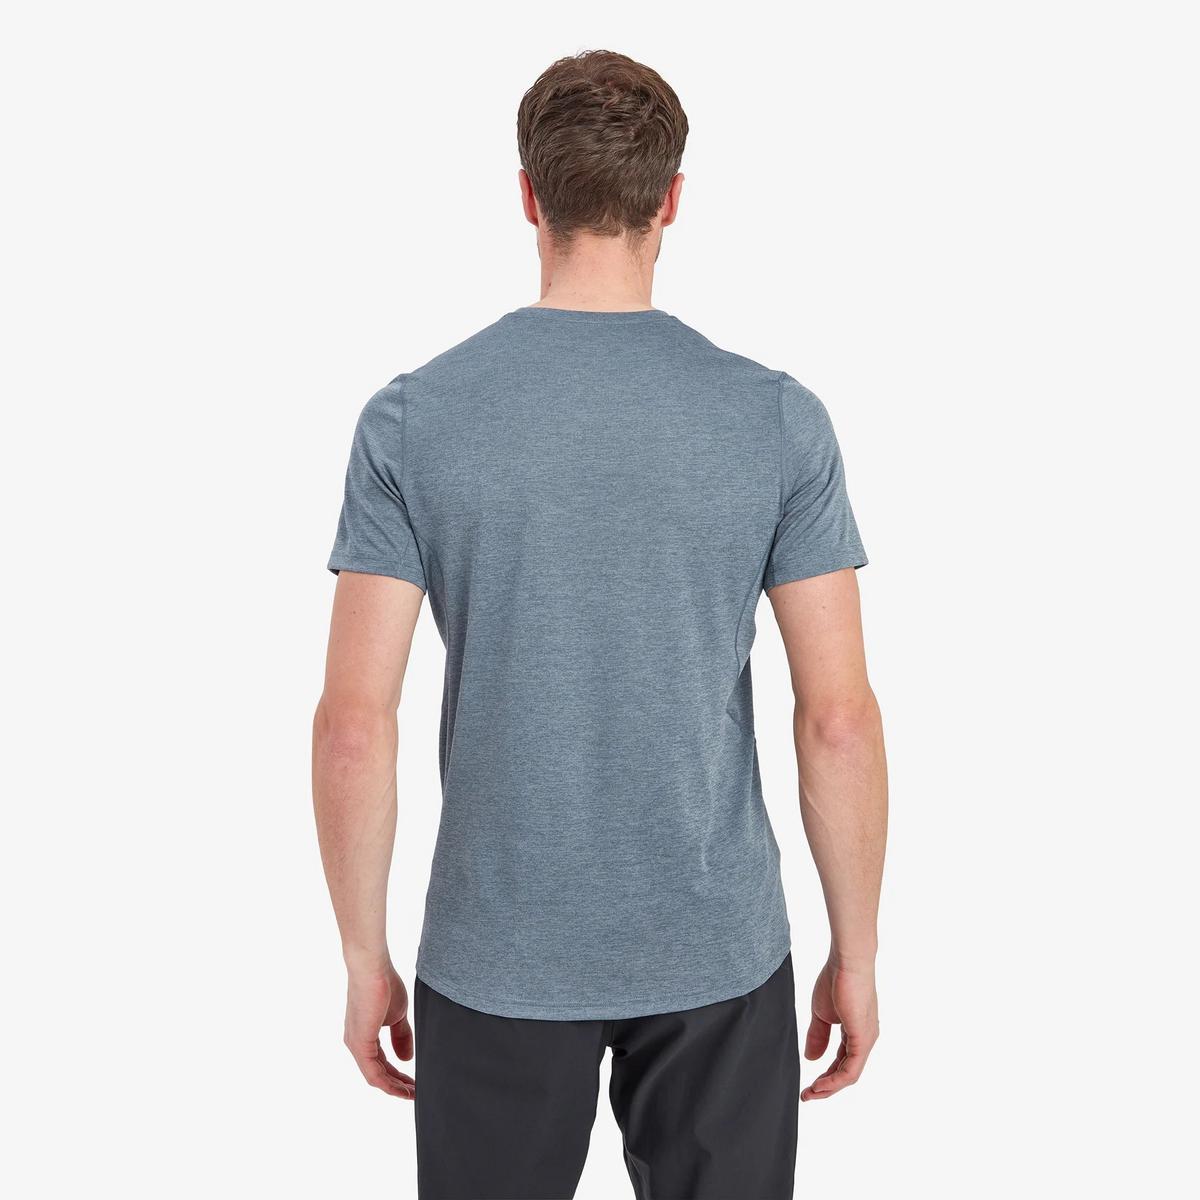 Montane Men's Dart Short Sleeve T-shirt - Blue